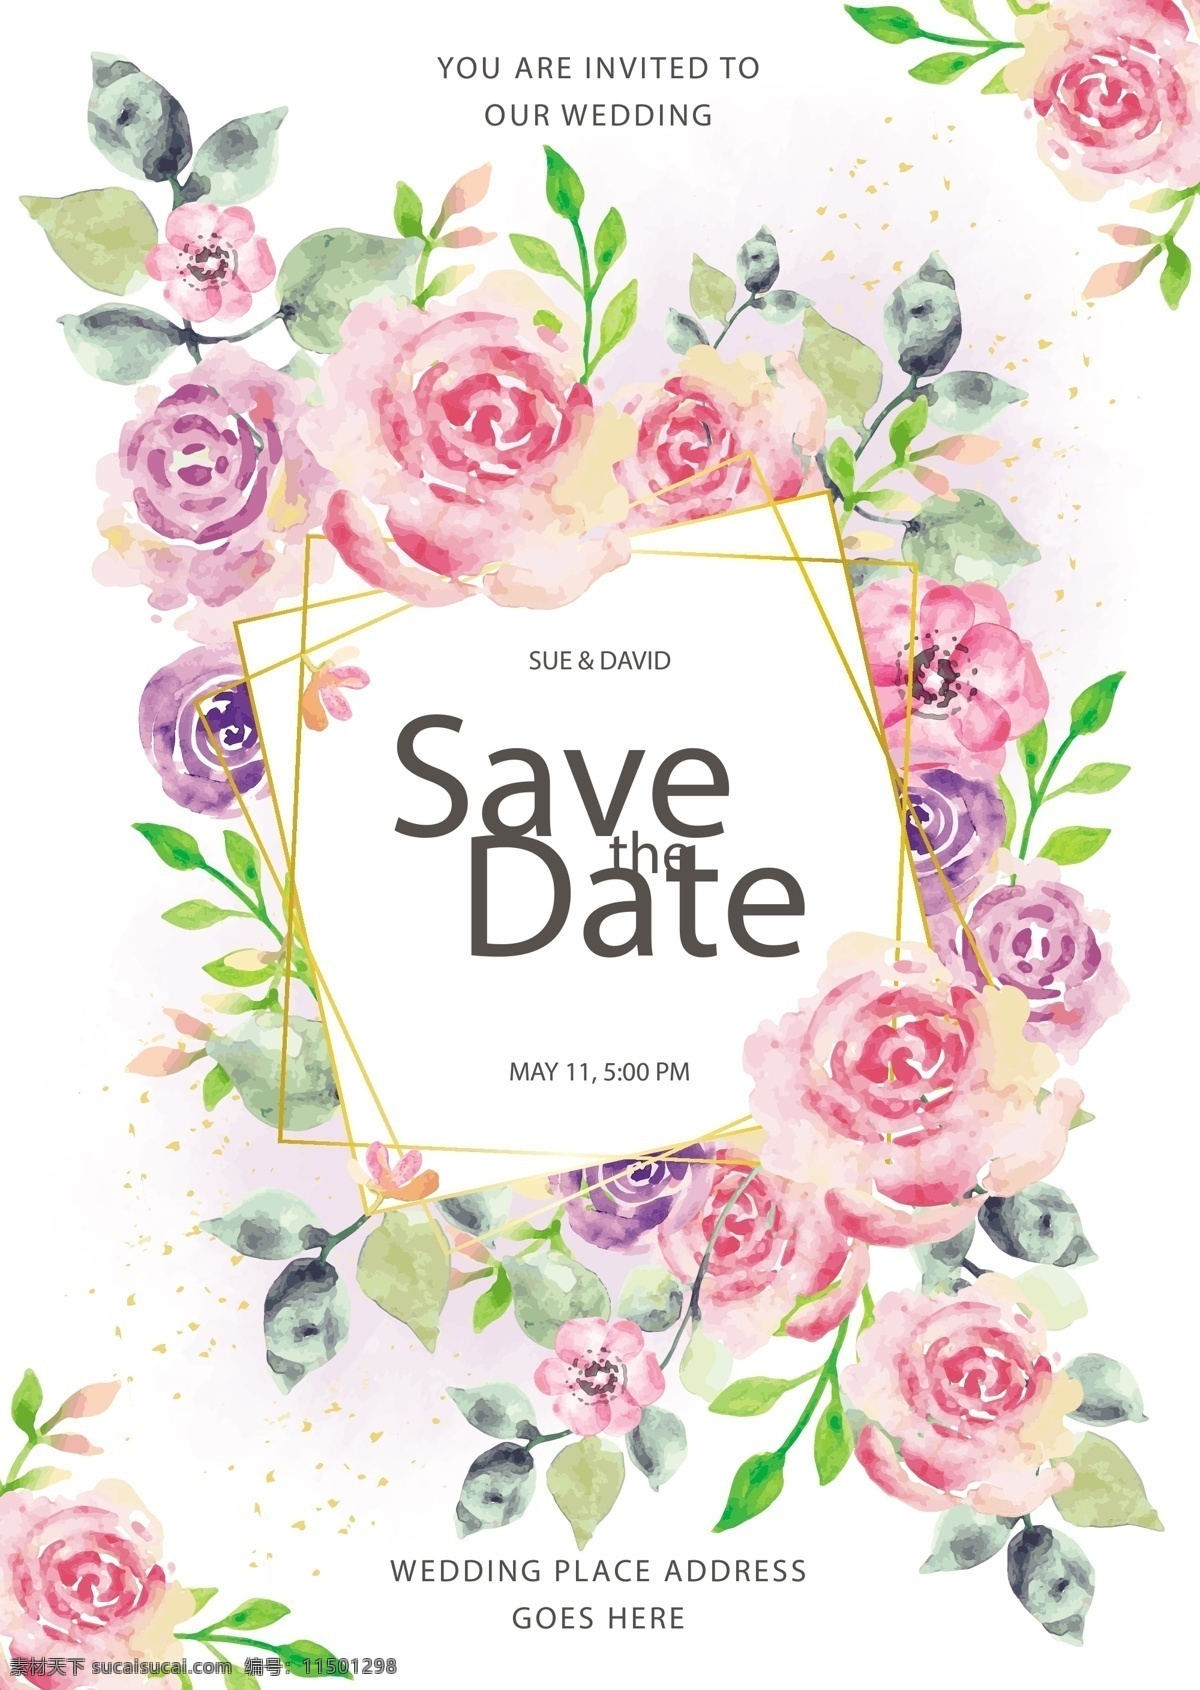 玫瑰 婚礼 邀请 卡 木板 粉玫瑰 紫玫瑰 水彩 玫瑰花 矢量 高清图片